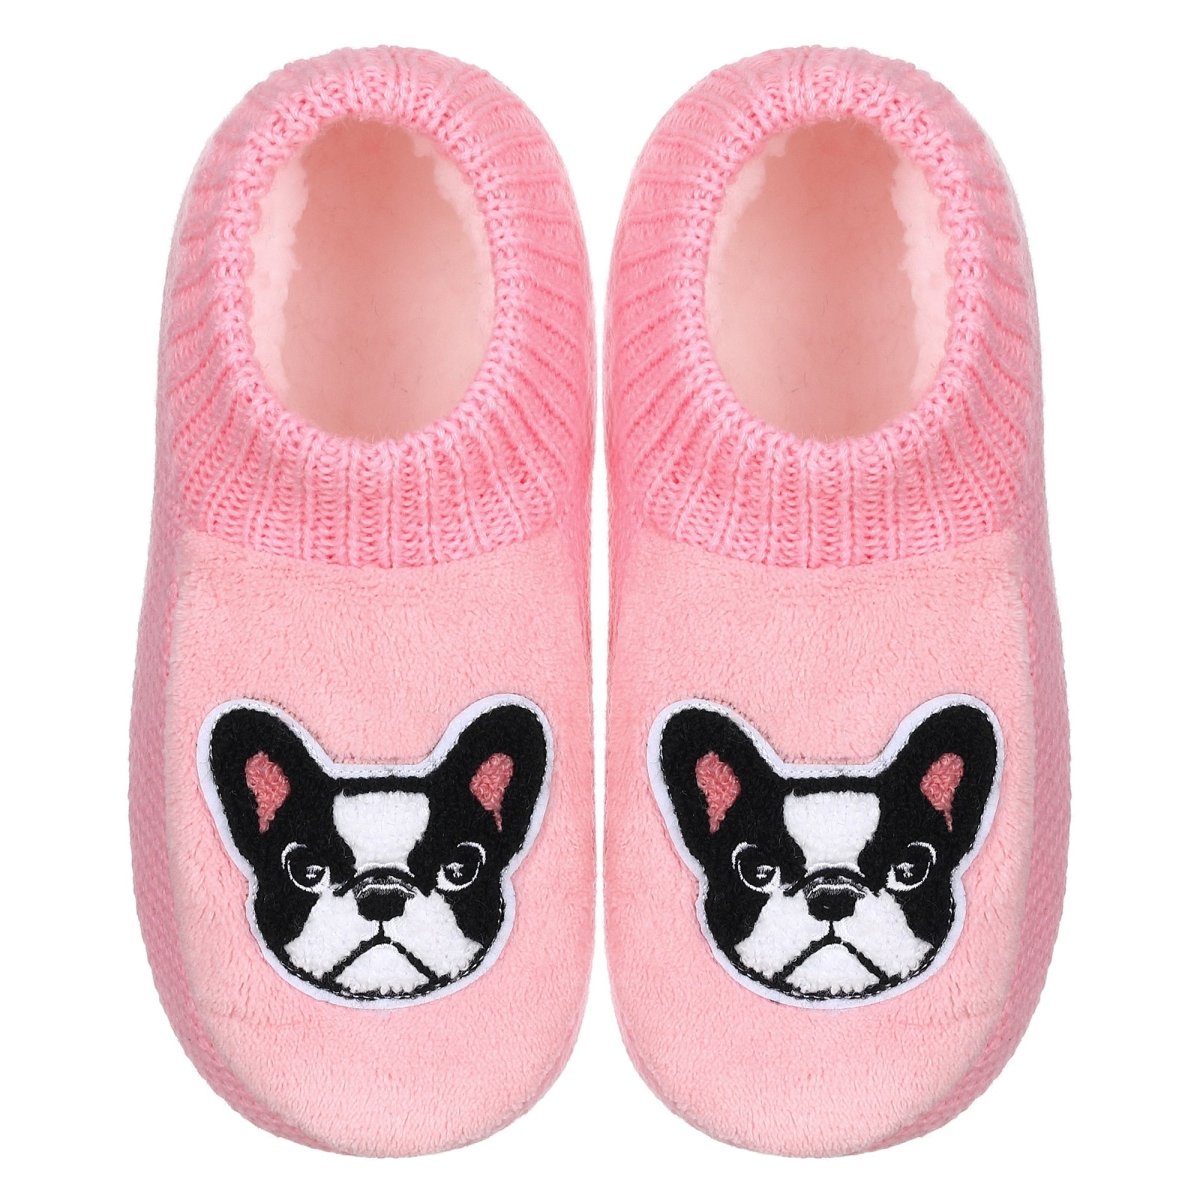 Fuzzy French Bulldog Slipper Socks - French Bulldog Store